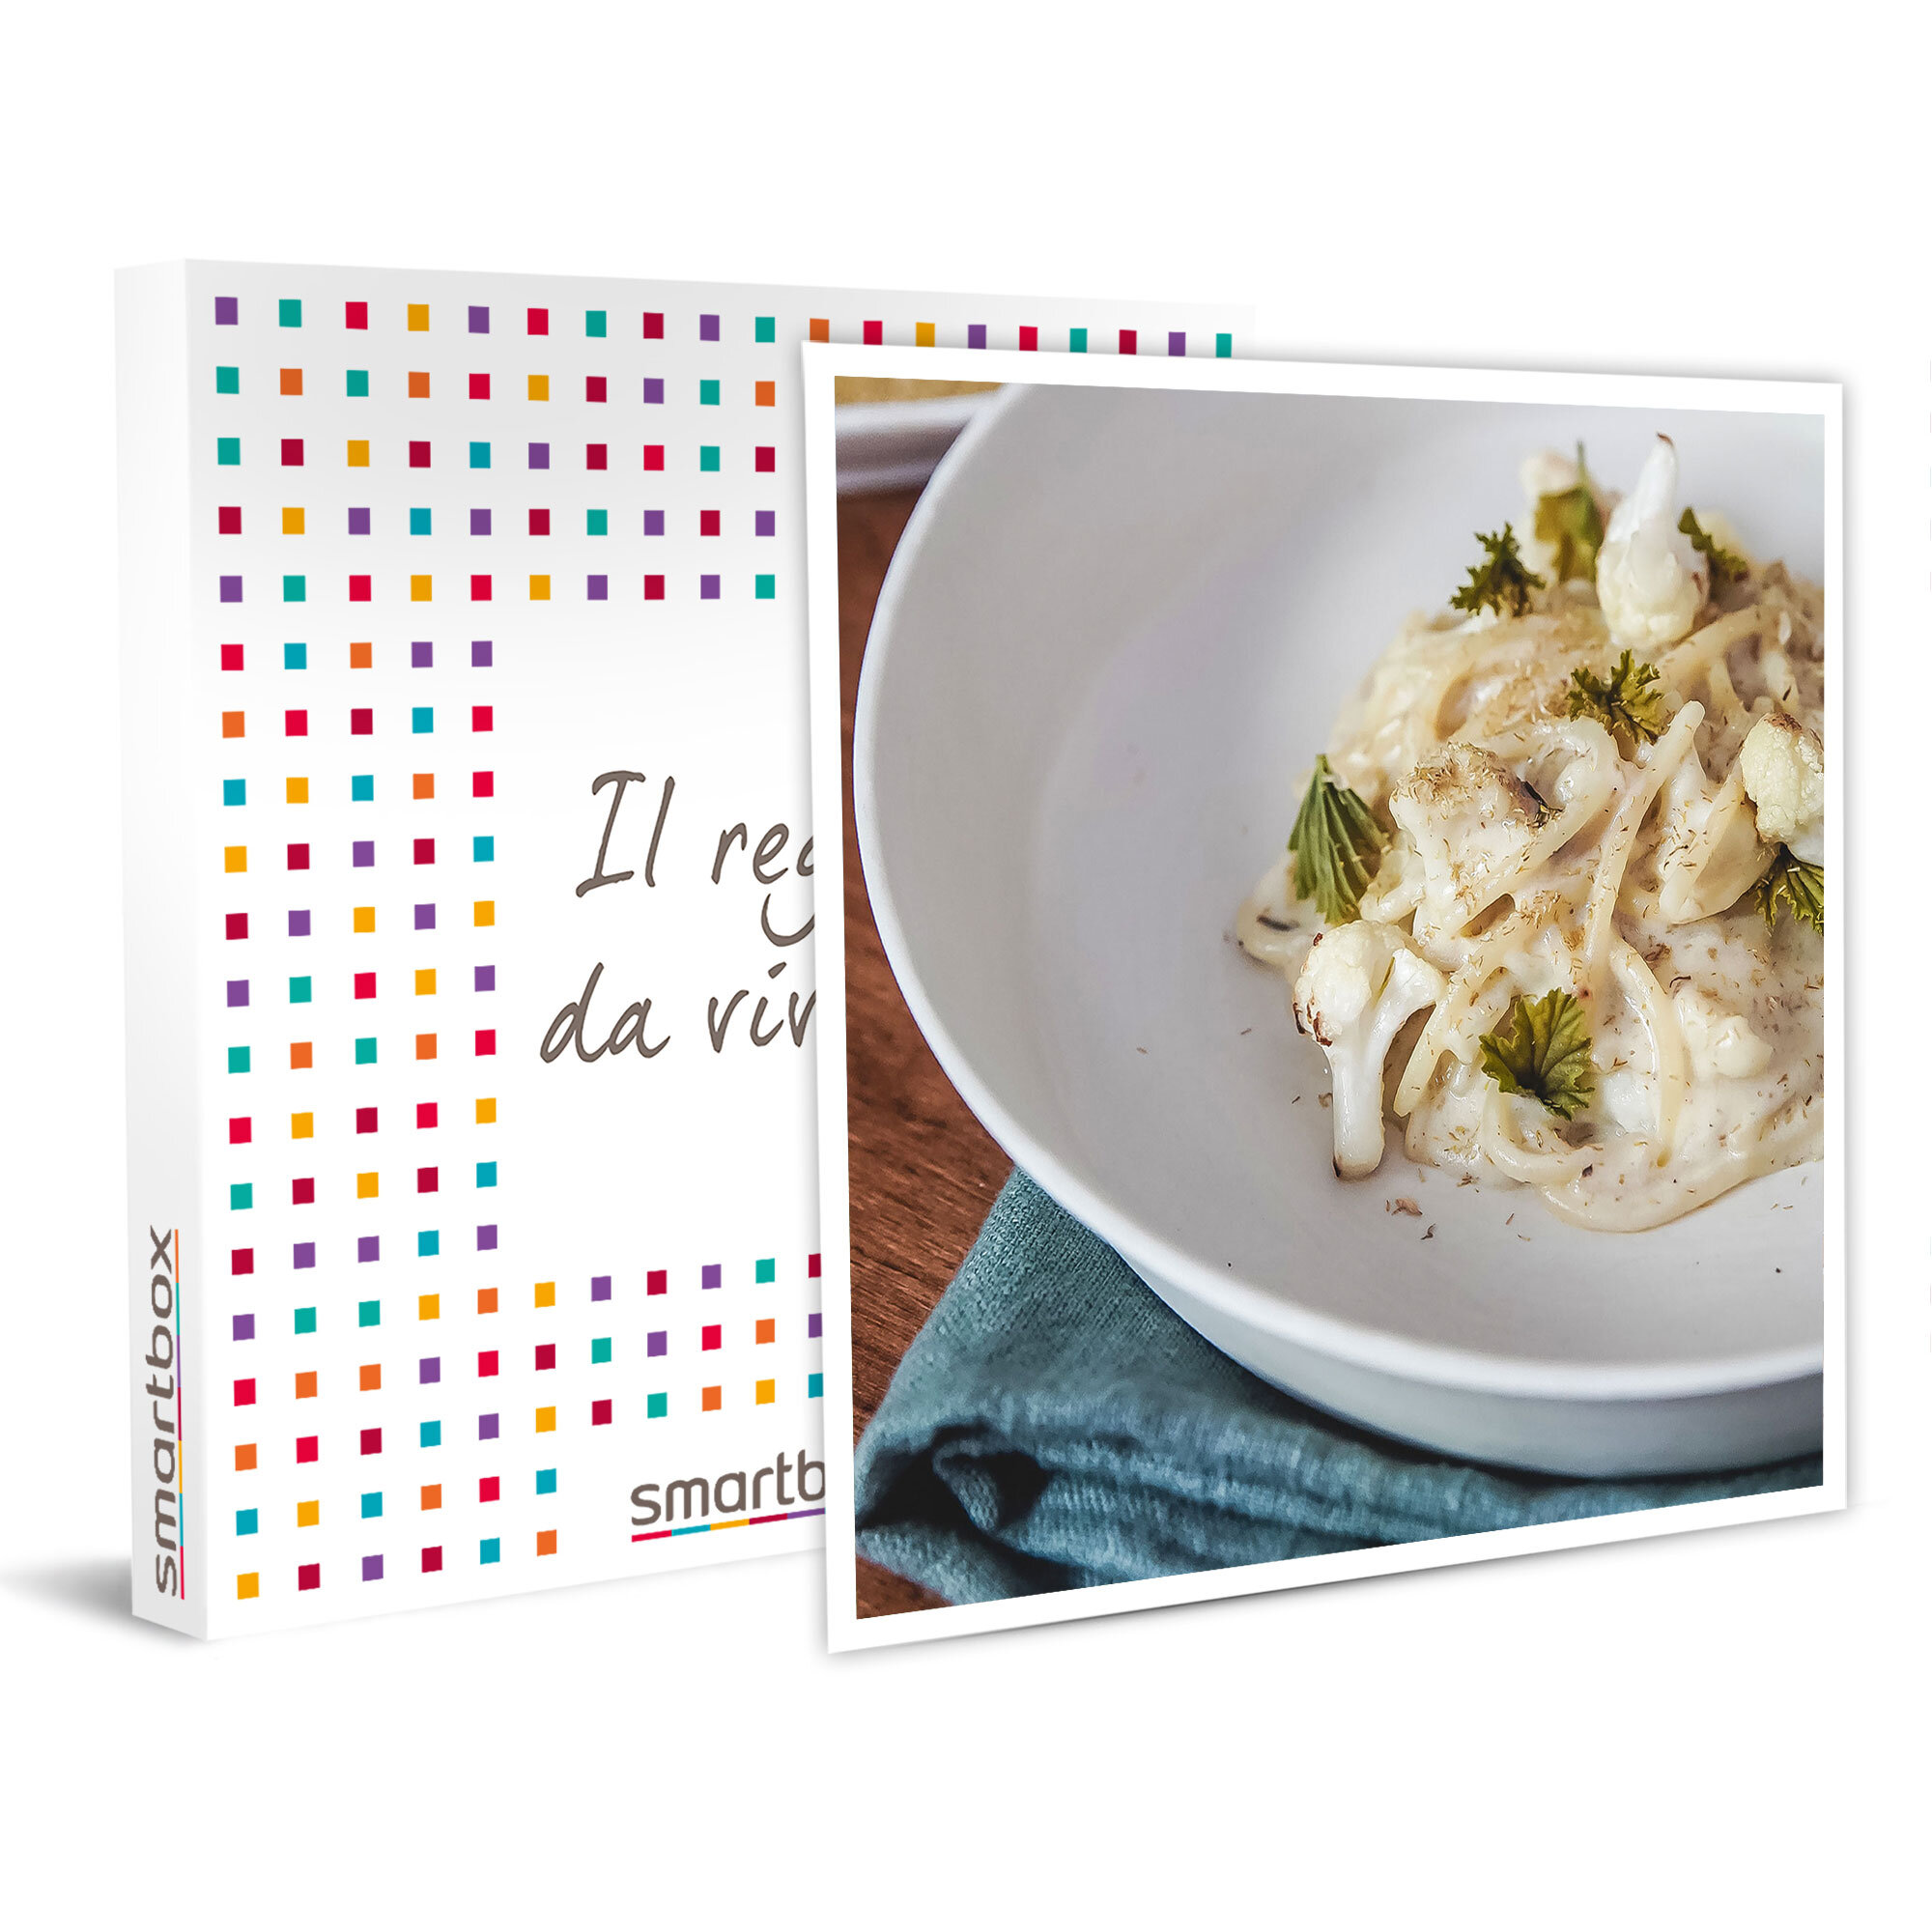 A tavola con la Chef Antonia Klugmann: 1 My Cooking Box e 1 lezione di cucina digitale